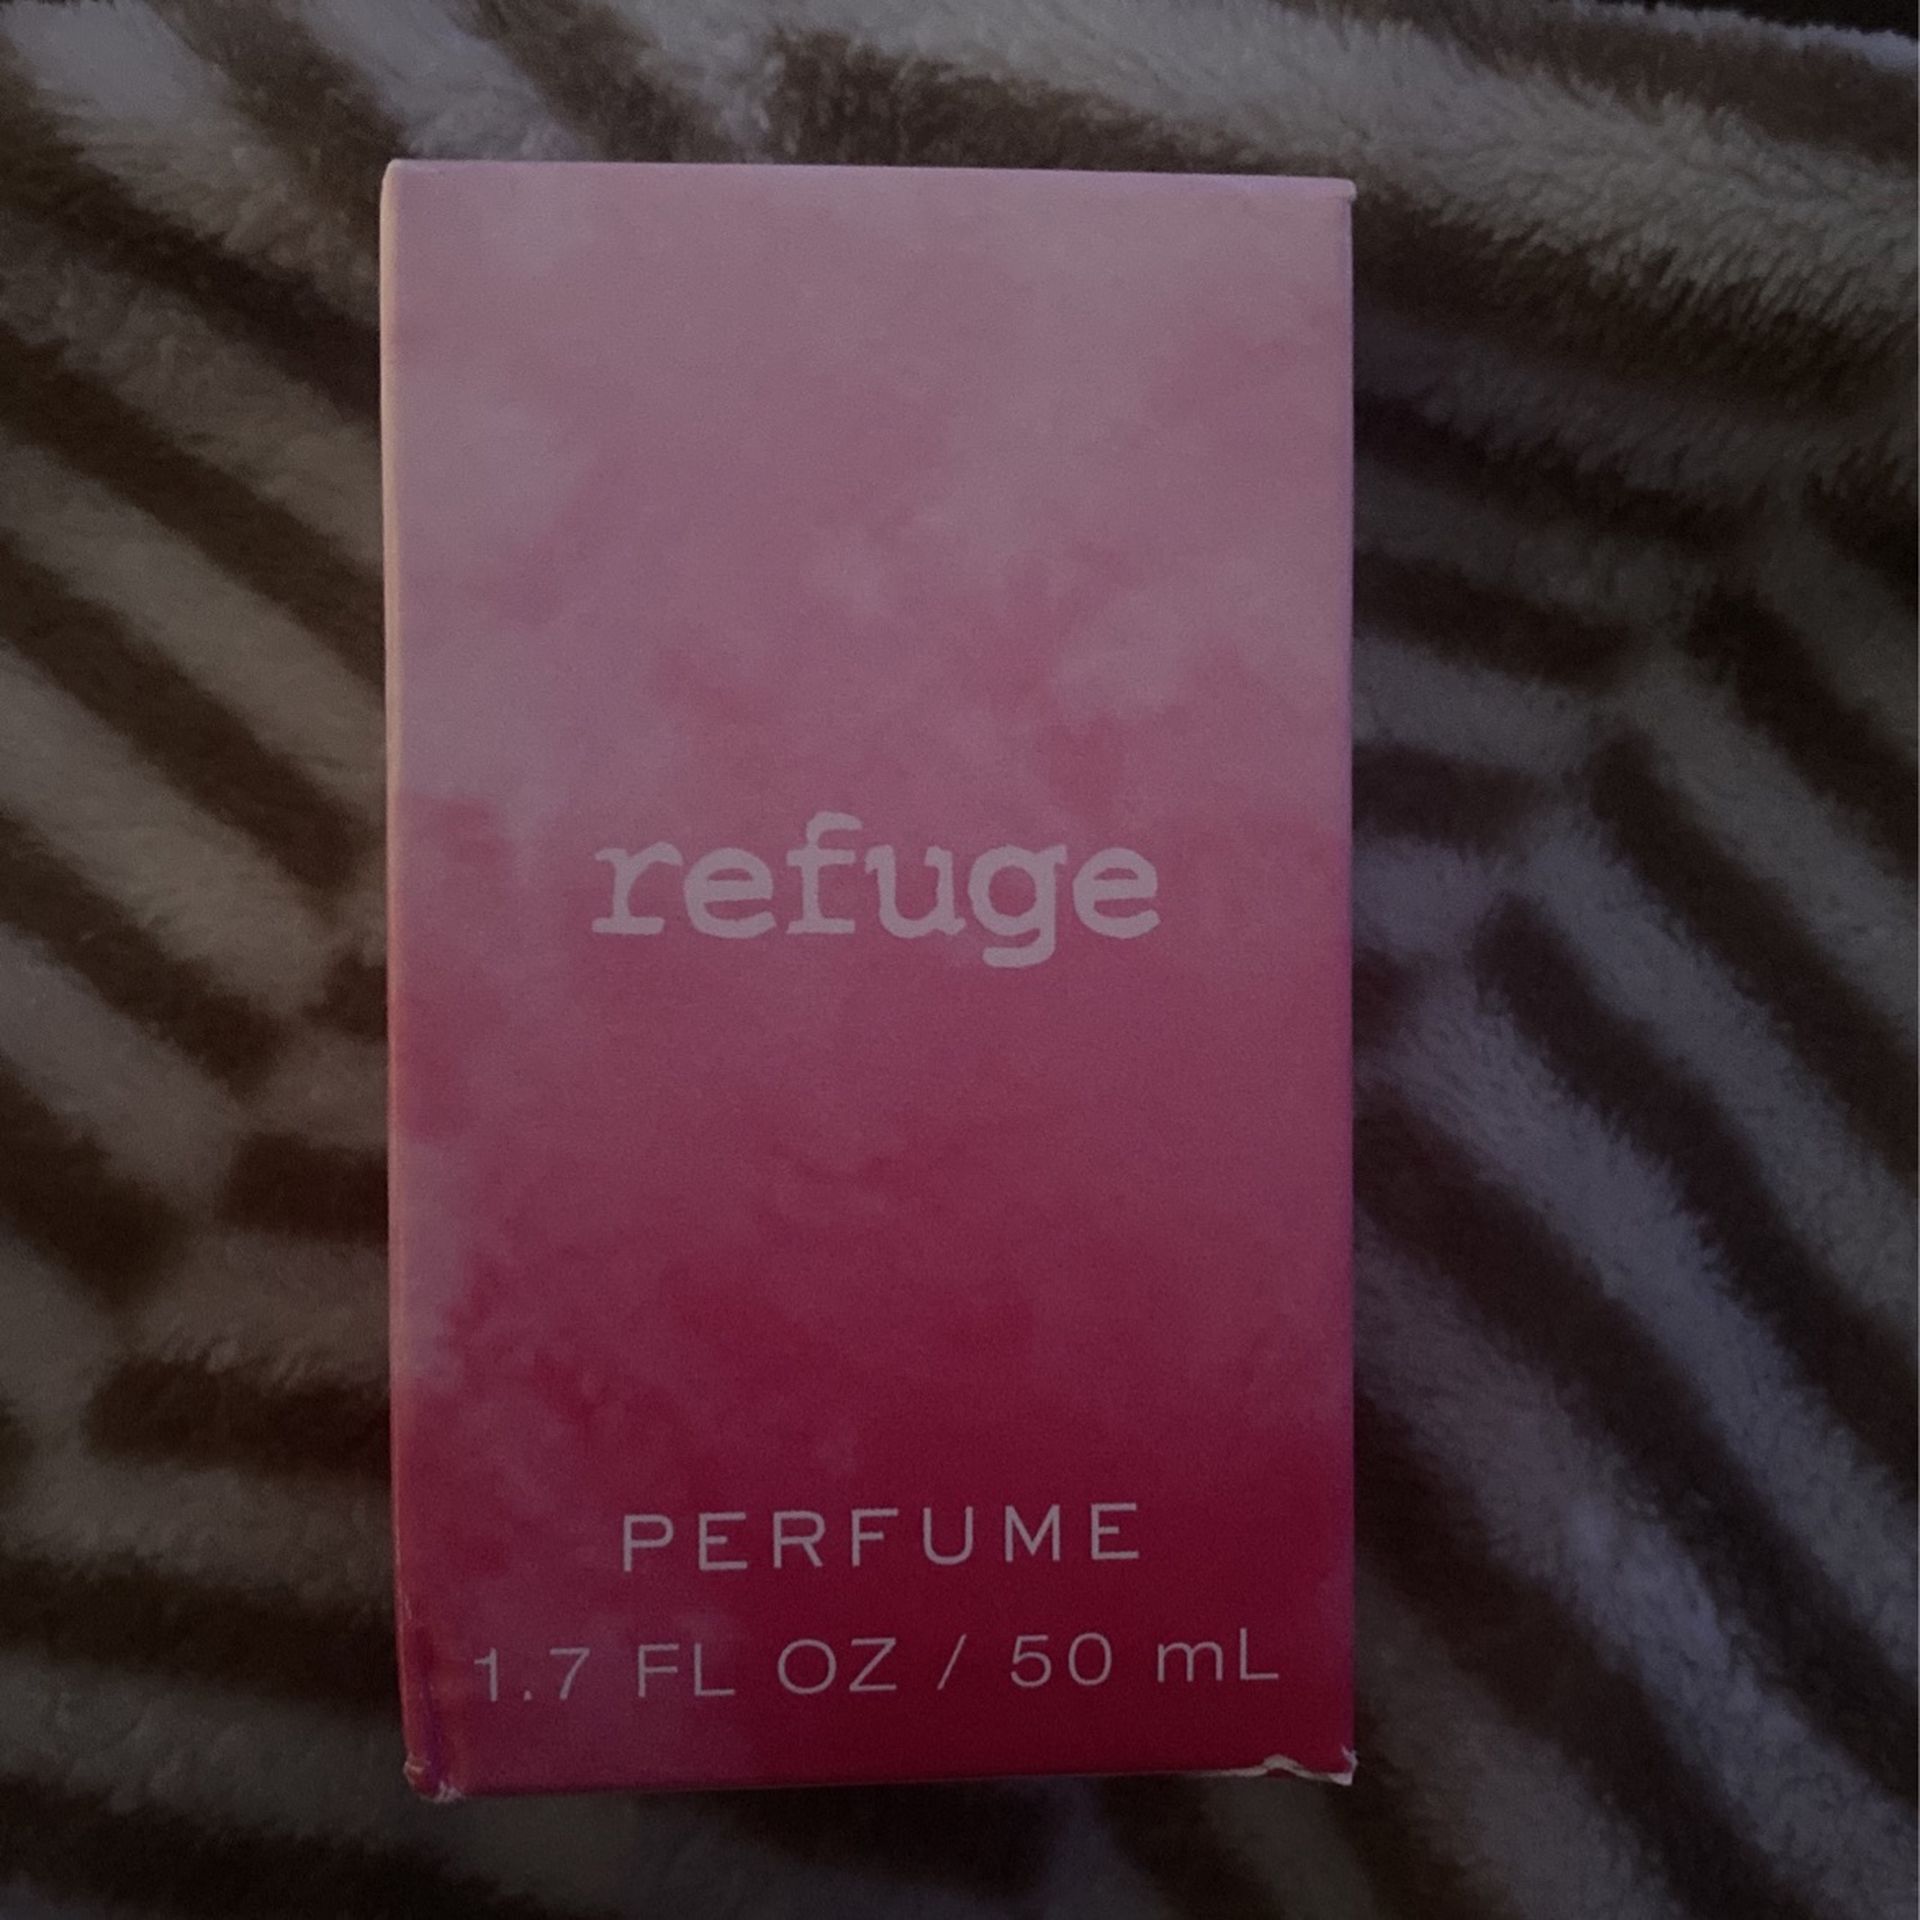 Refuge perfume